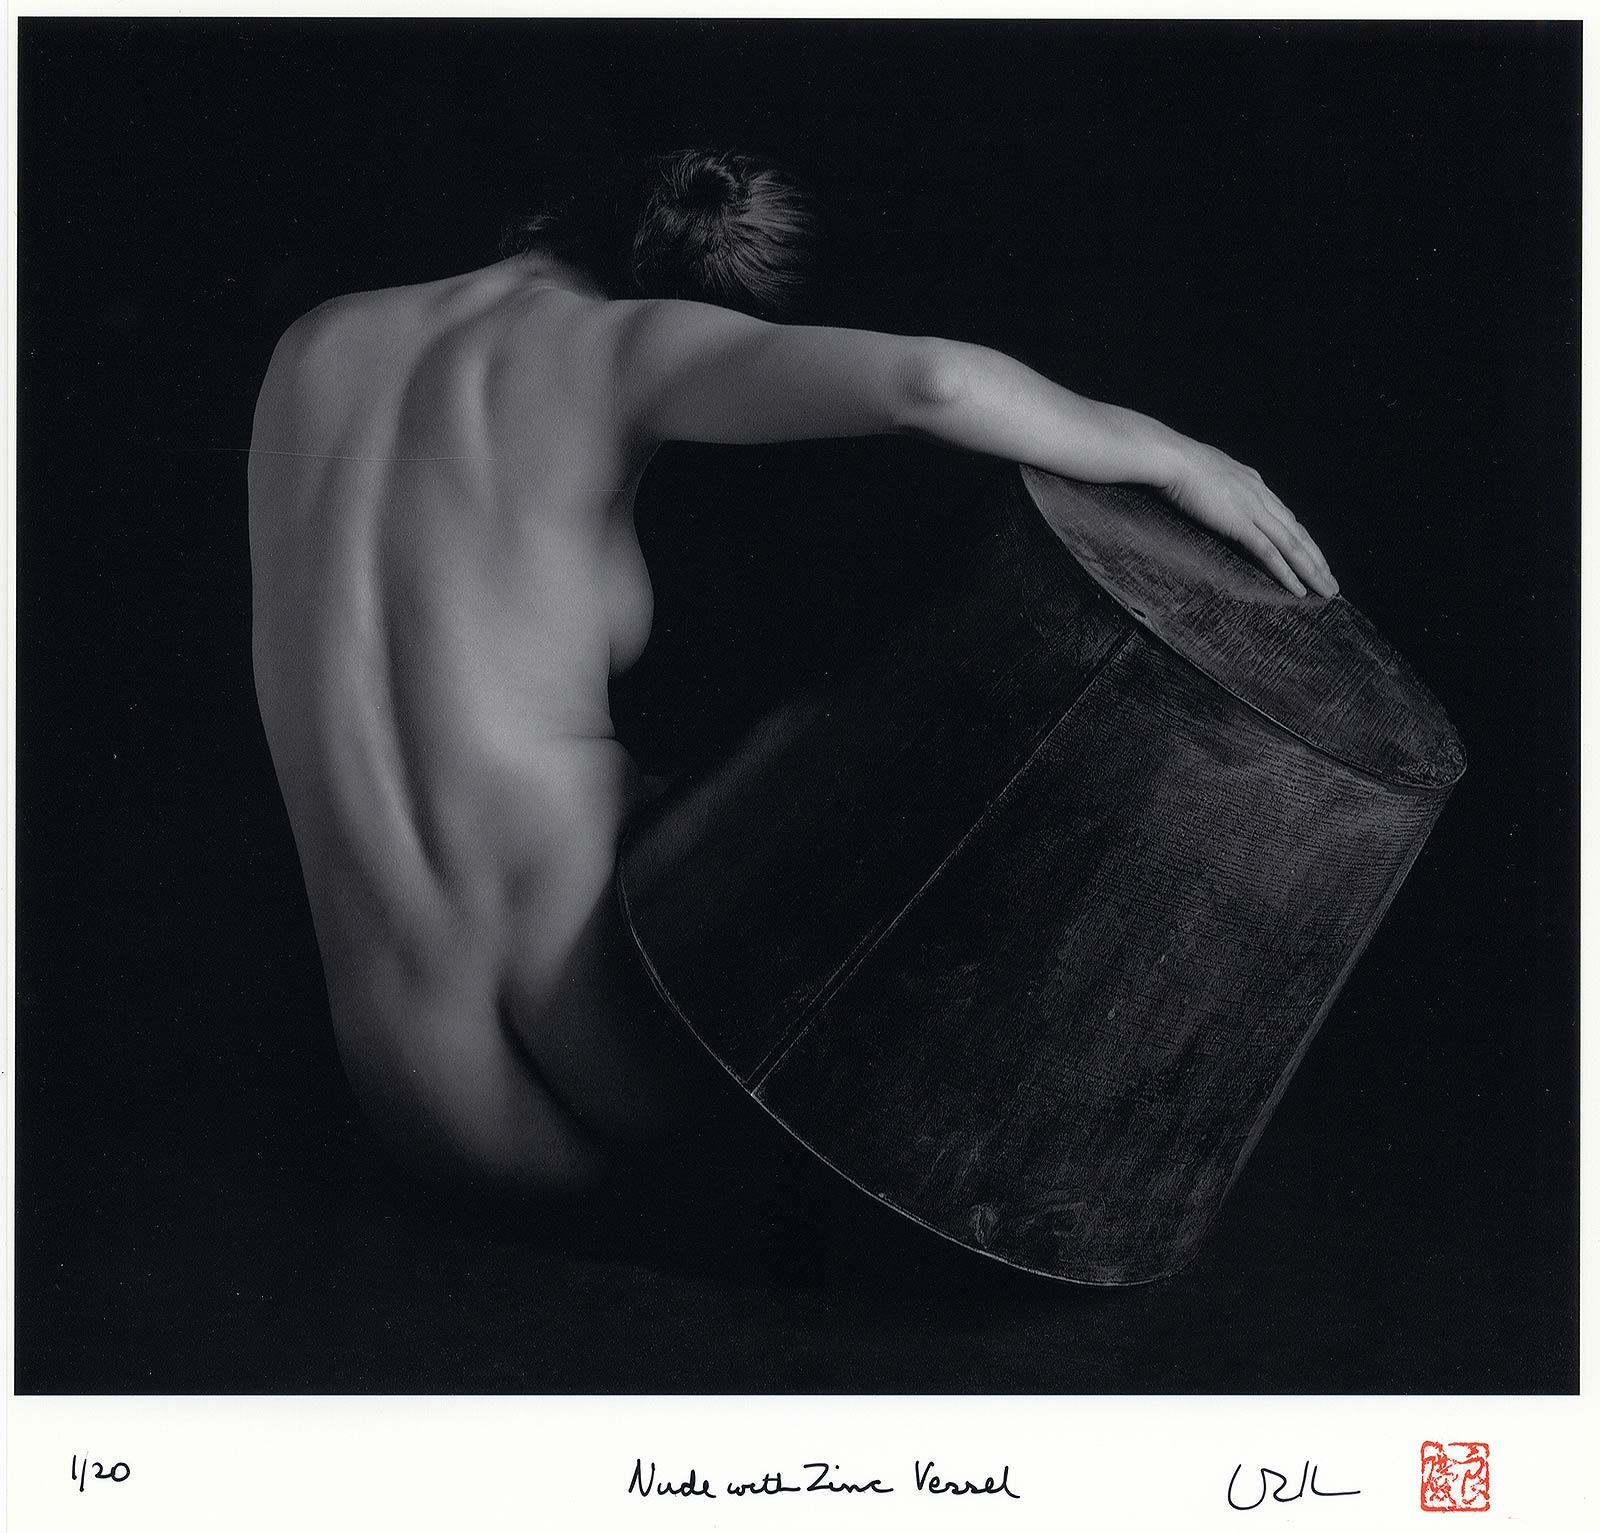 Akt mit Zinkgefäß (Rückenblick auf eine nackte Frau, die ein Zinkobjekt in der Hand hält) (Schwarz), Nude Photograph, von Eric Kellerman (b. 1944)